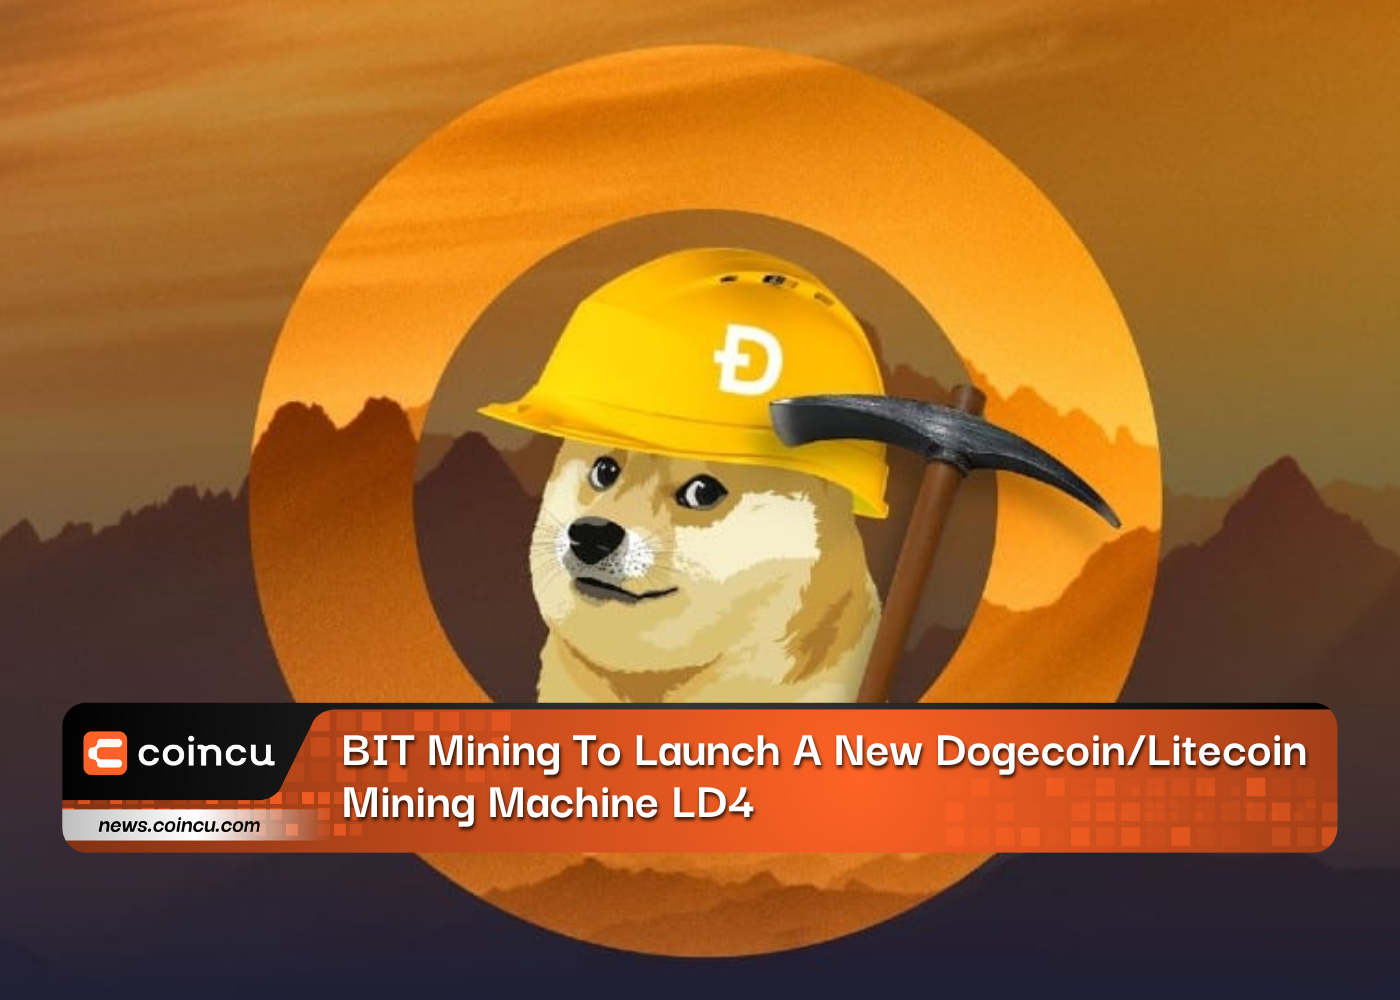 BIT Mining bringt eine neue Dogecoin/Litecoin-Mining-Maschine LD4 auf den Markt